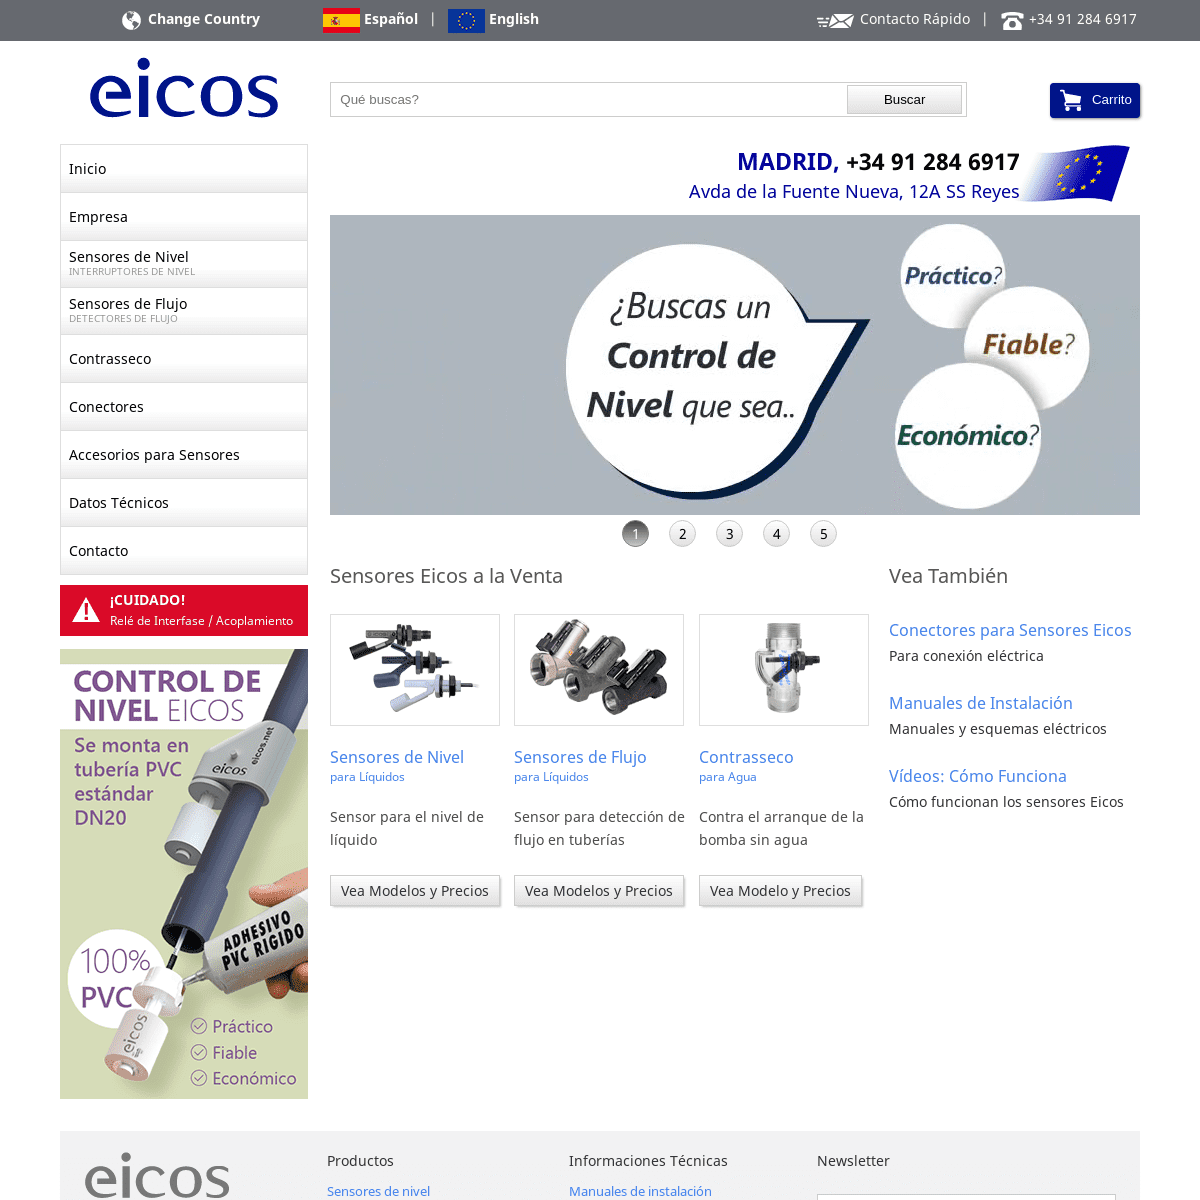 A complete backup of eicos.com